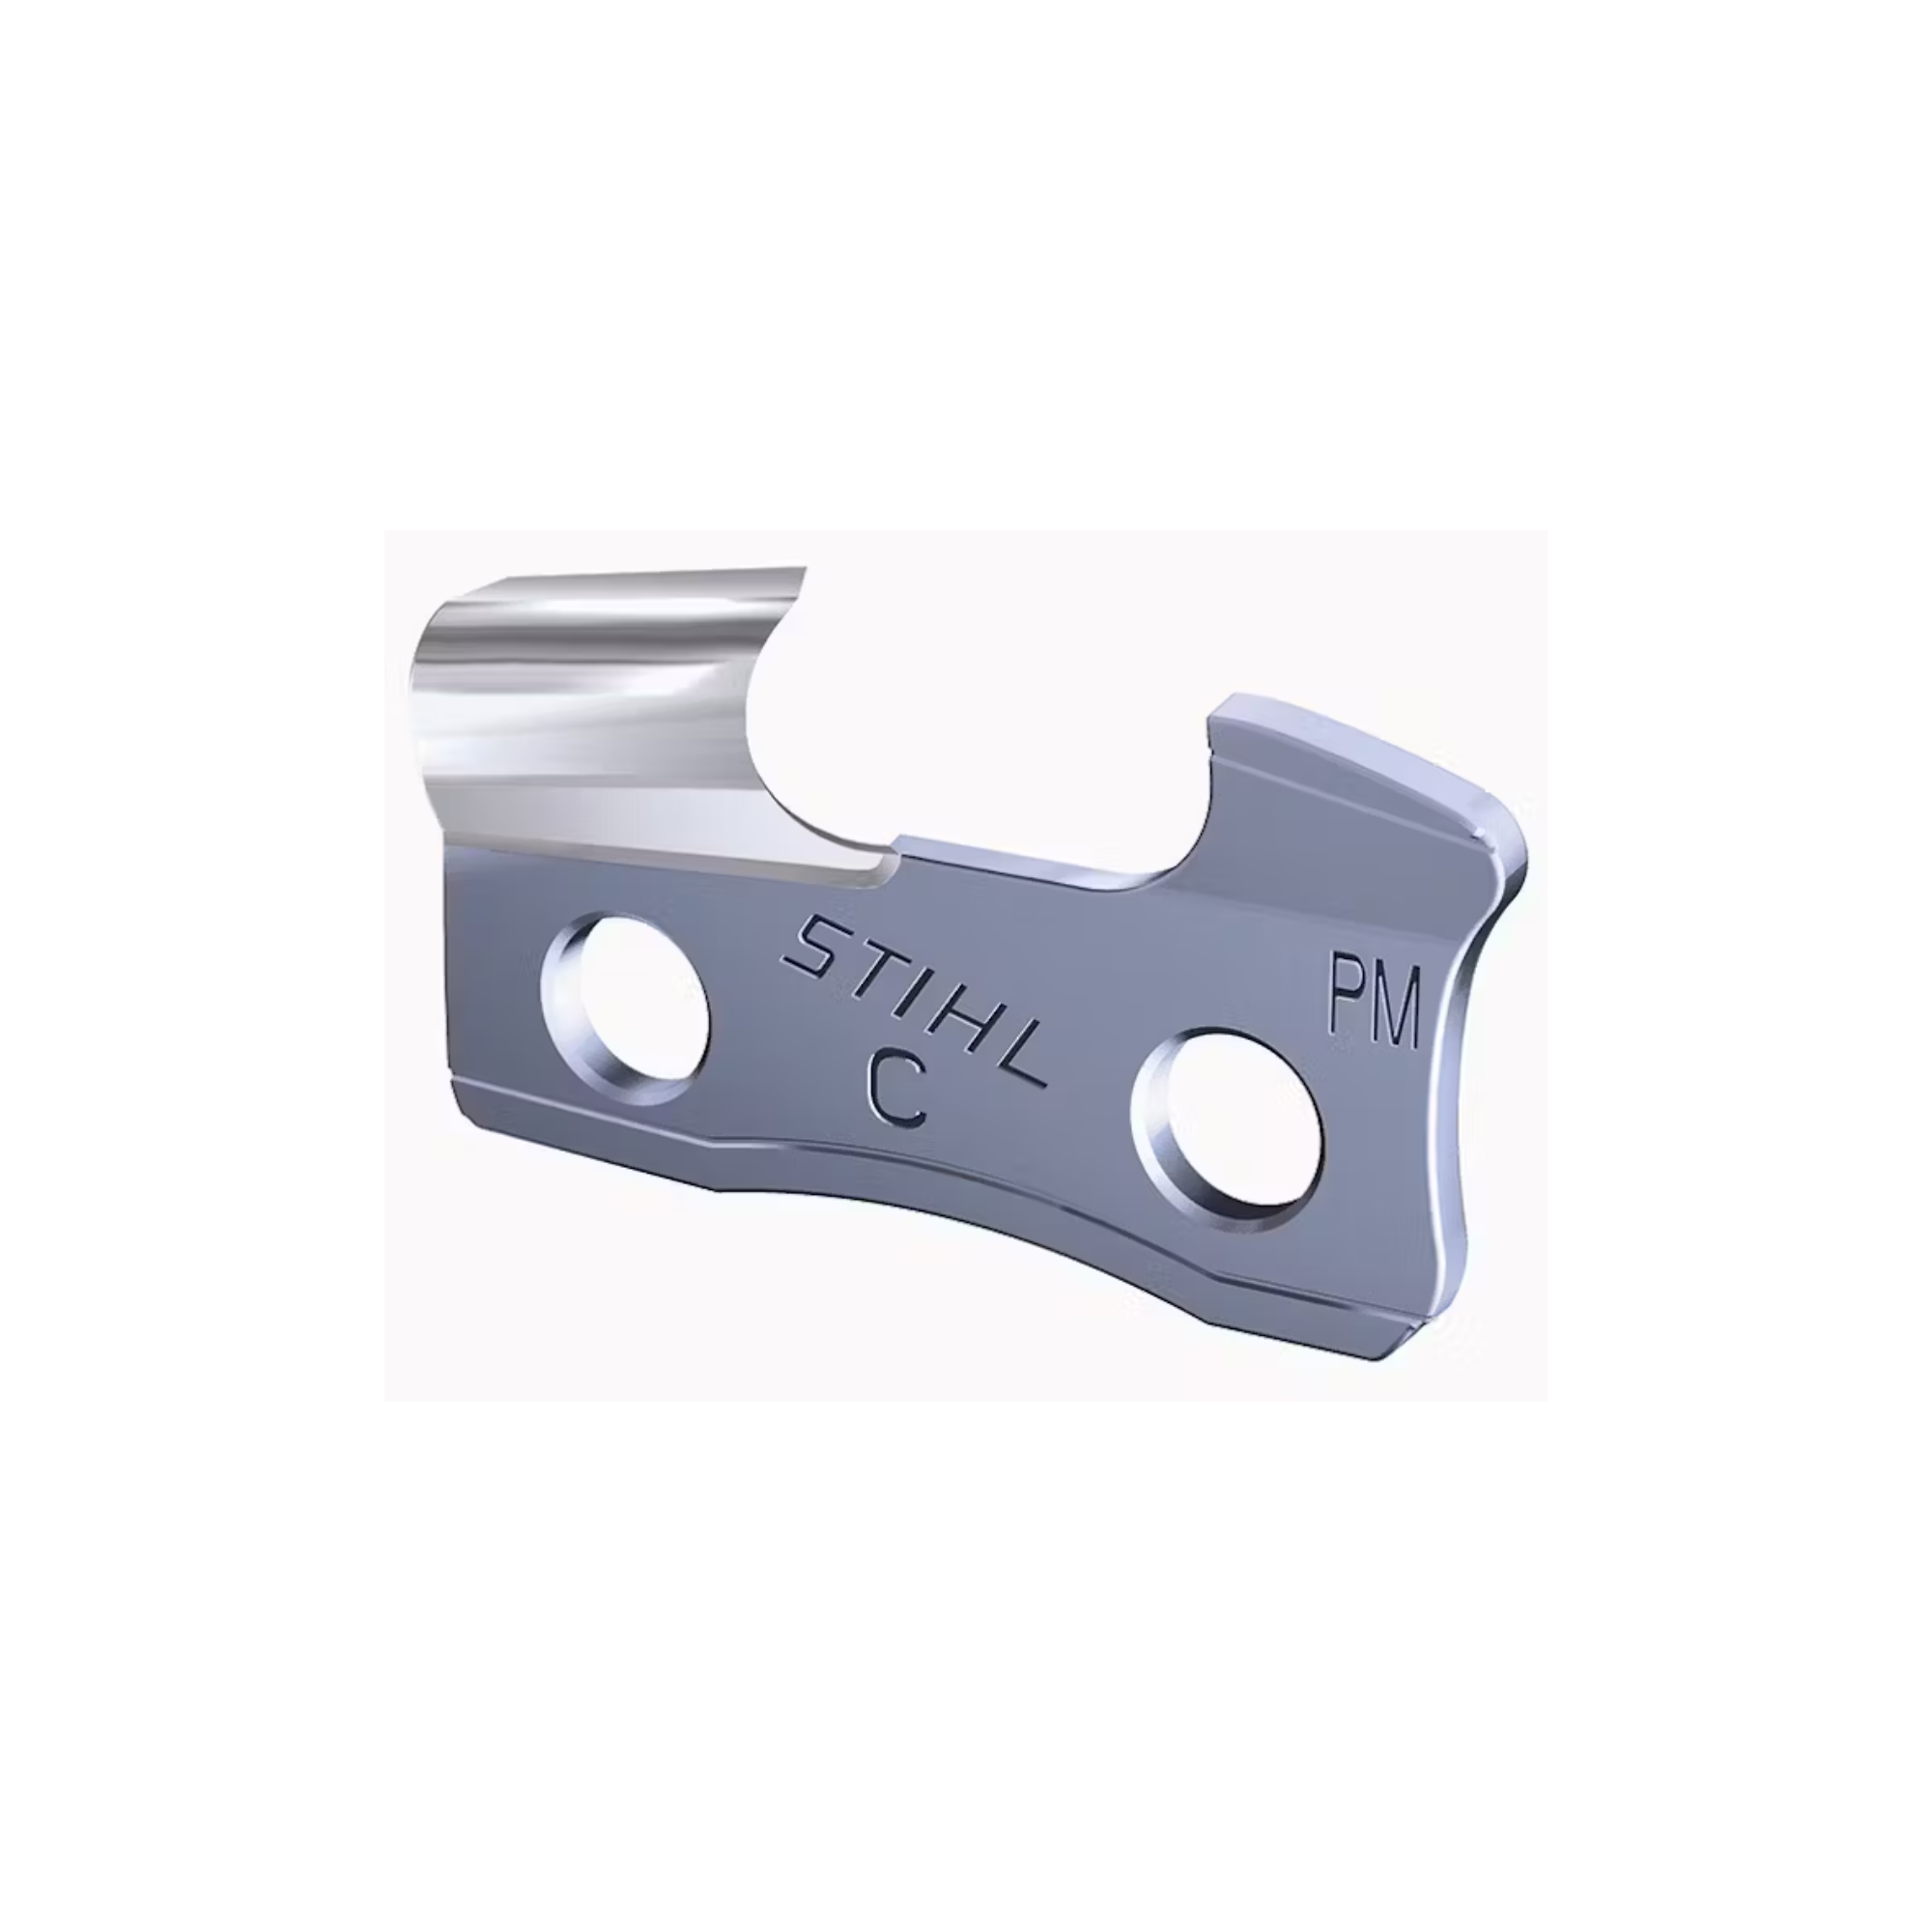 Stihl Oilomatic Picco Micro Mini 3 | 61 PMM3 44 | 12 in. | 44 Drive Links | Chainsaw Chain | 3610 005 0044